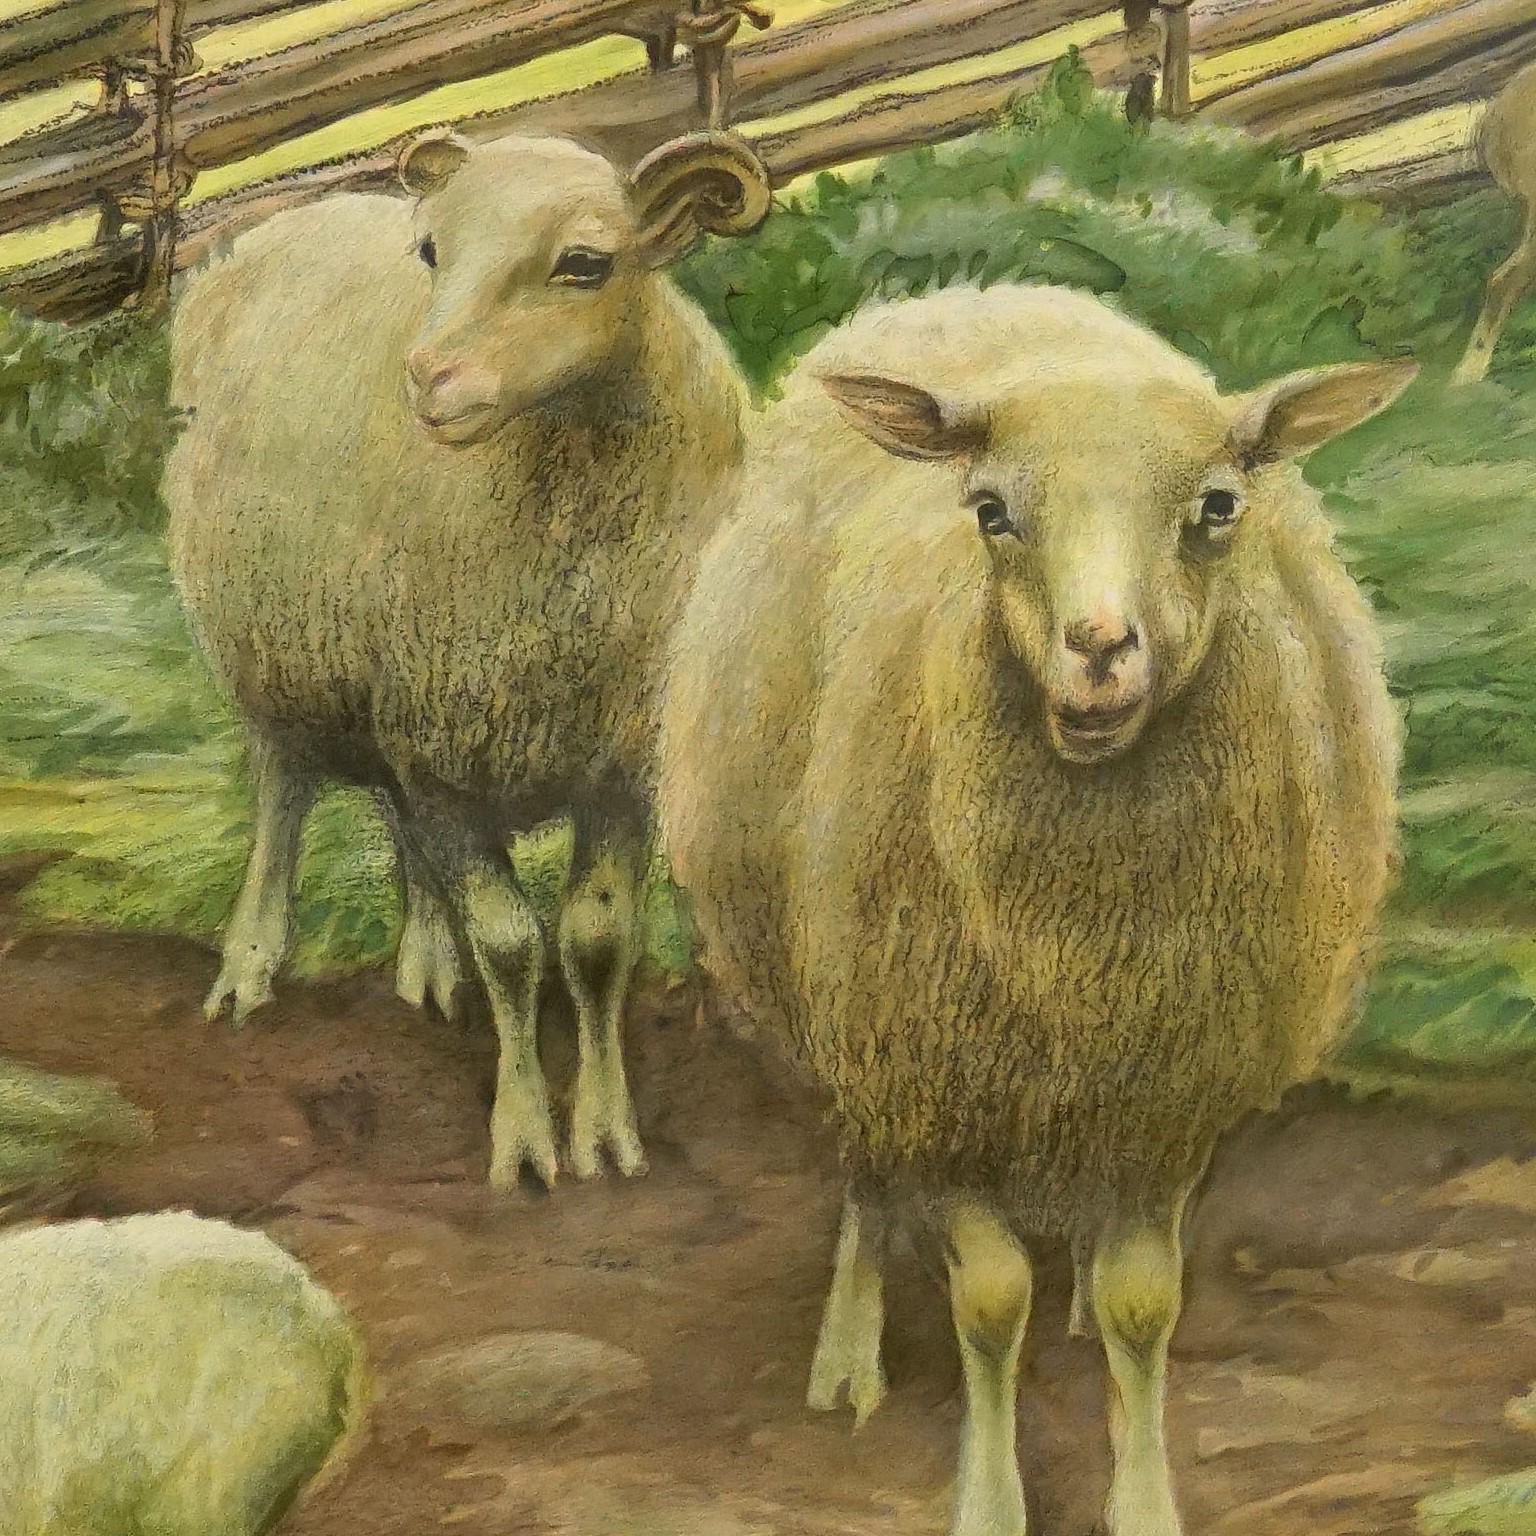 Le tableau mural à tirettes vintage illustre des moutons dans la campagne. Impression colorée sur papier renforcé par de la toile.
Mesures :
Largeur 97 cm (38.19 pouces)
Hauteur 73 cm (28.74 inch)

Les mesures indiquées se réfèrent uniquement à la